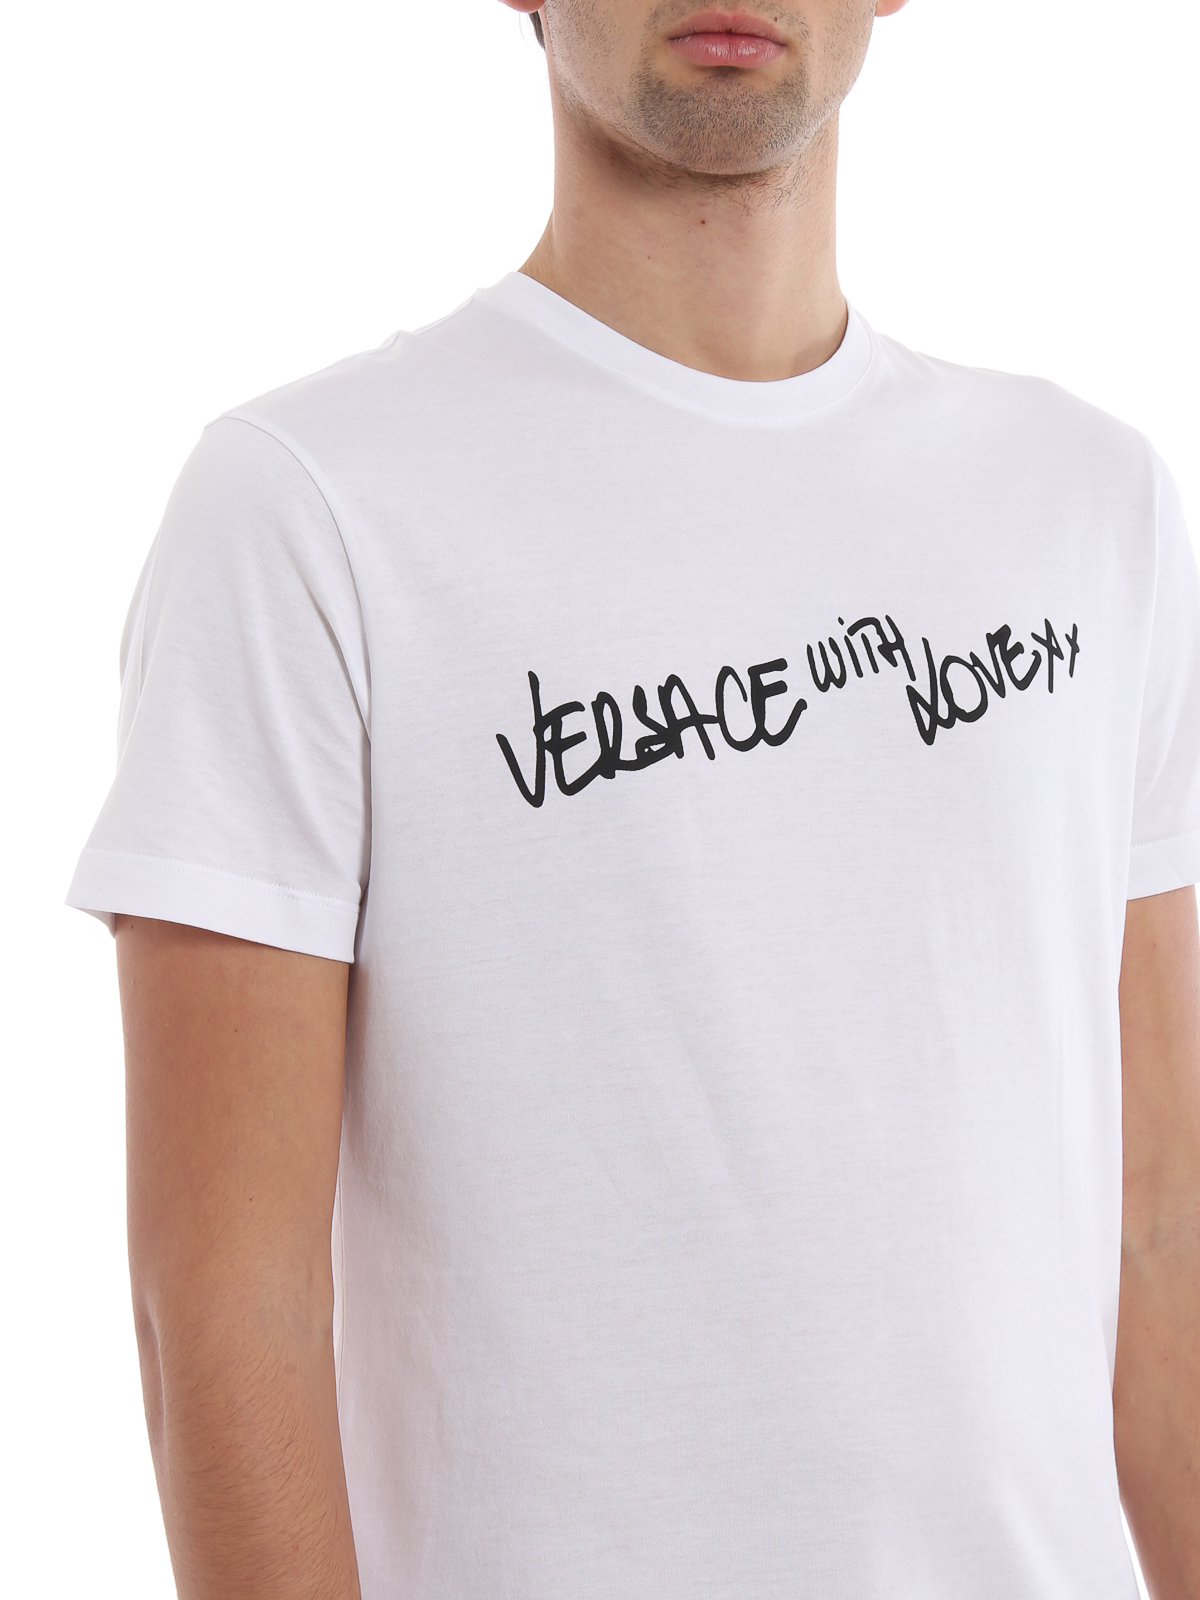 versace white t shirt